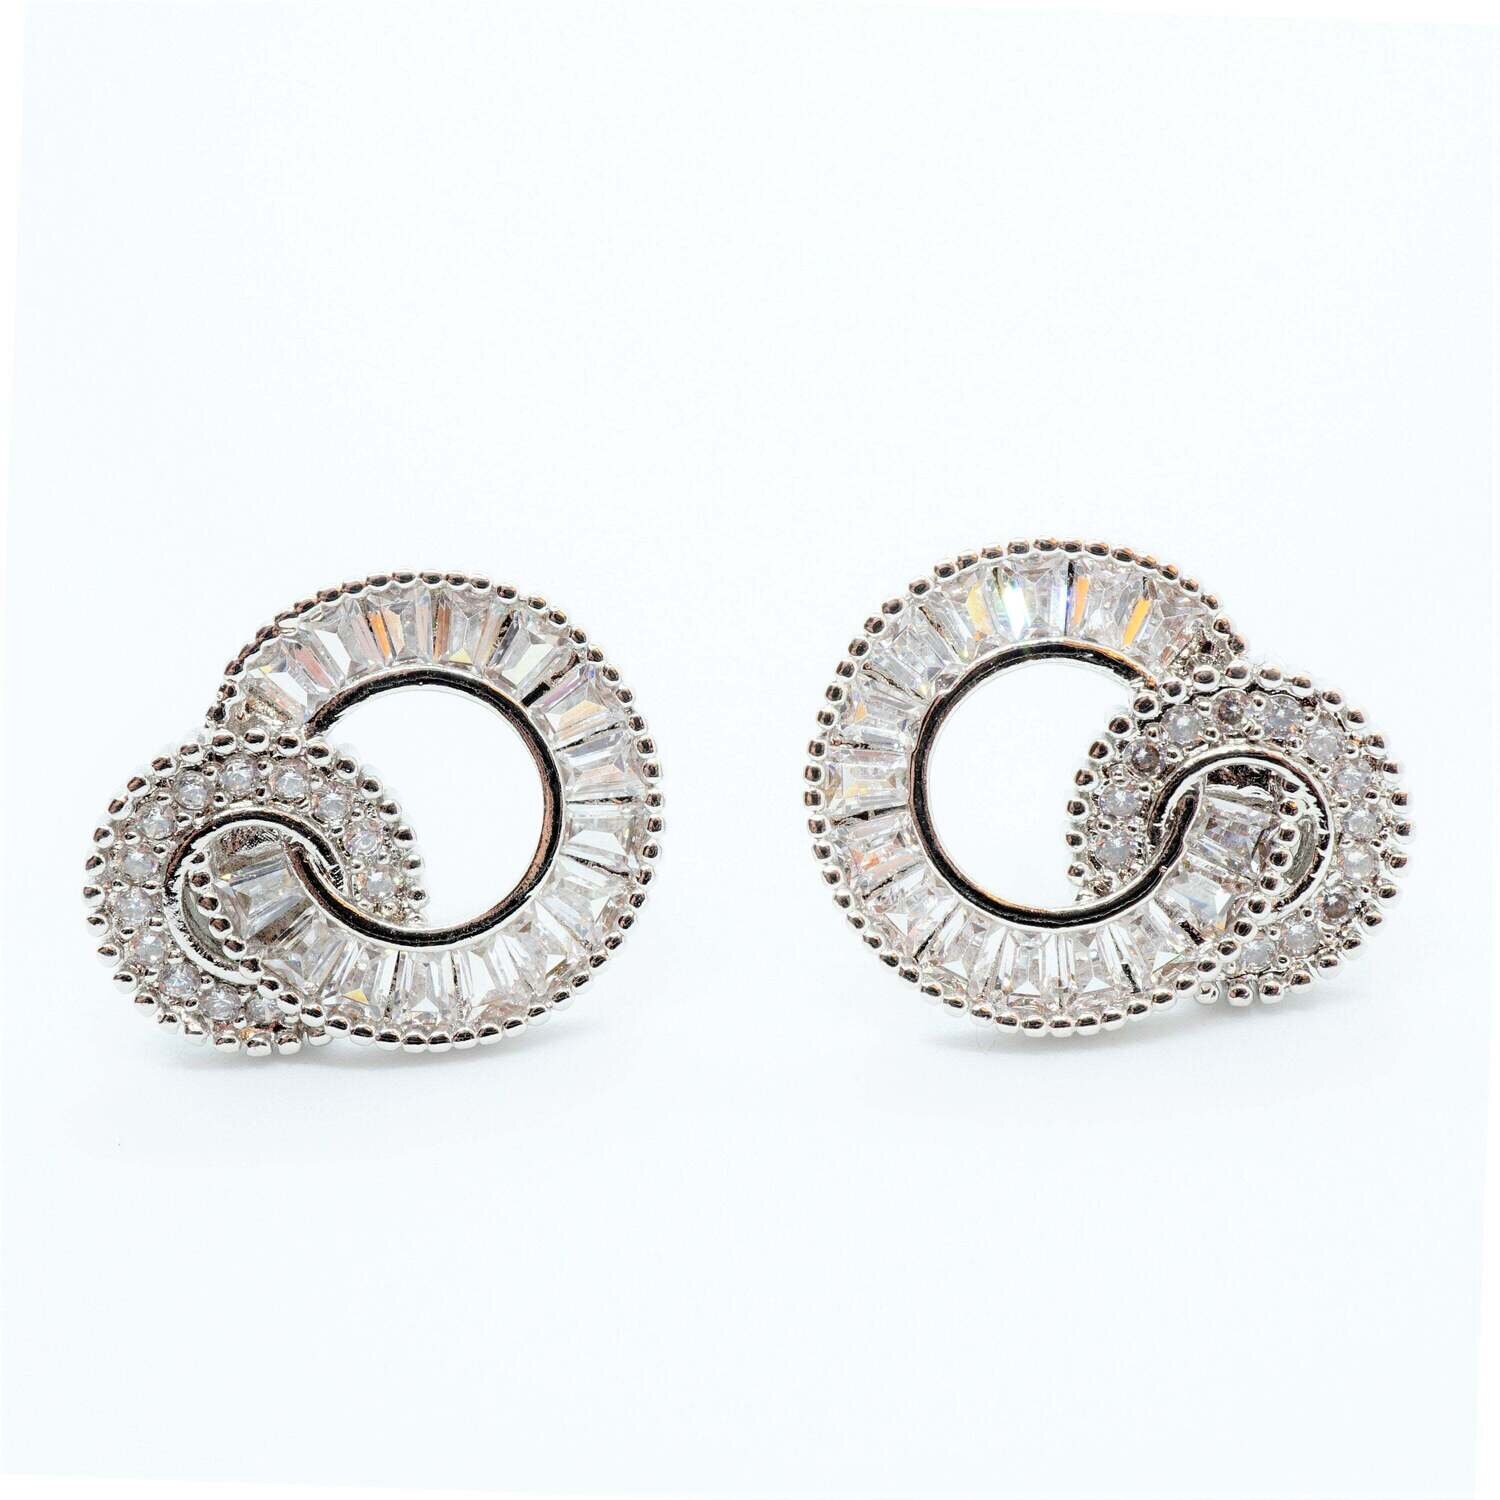 Round Crystal Wedding Earrings - Bridesmaid gift - Bridal earrings - Best friend gift